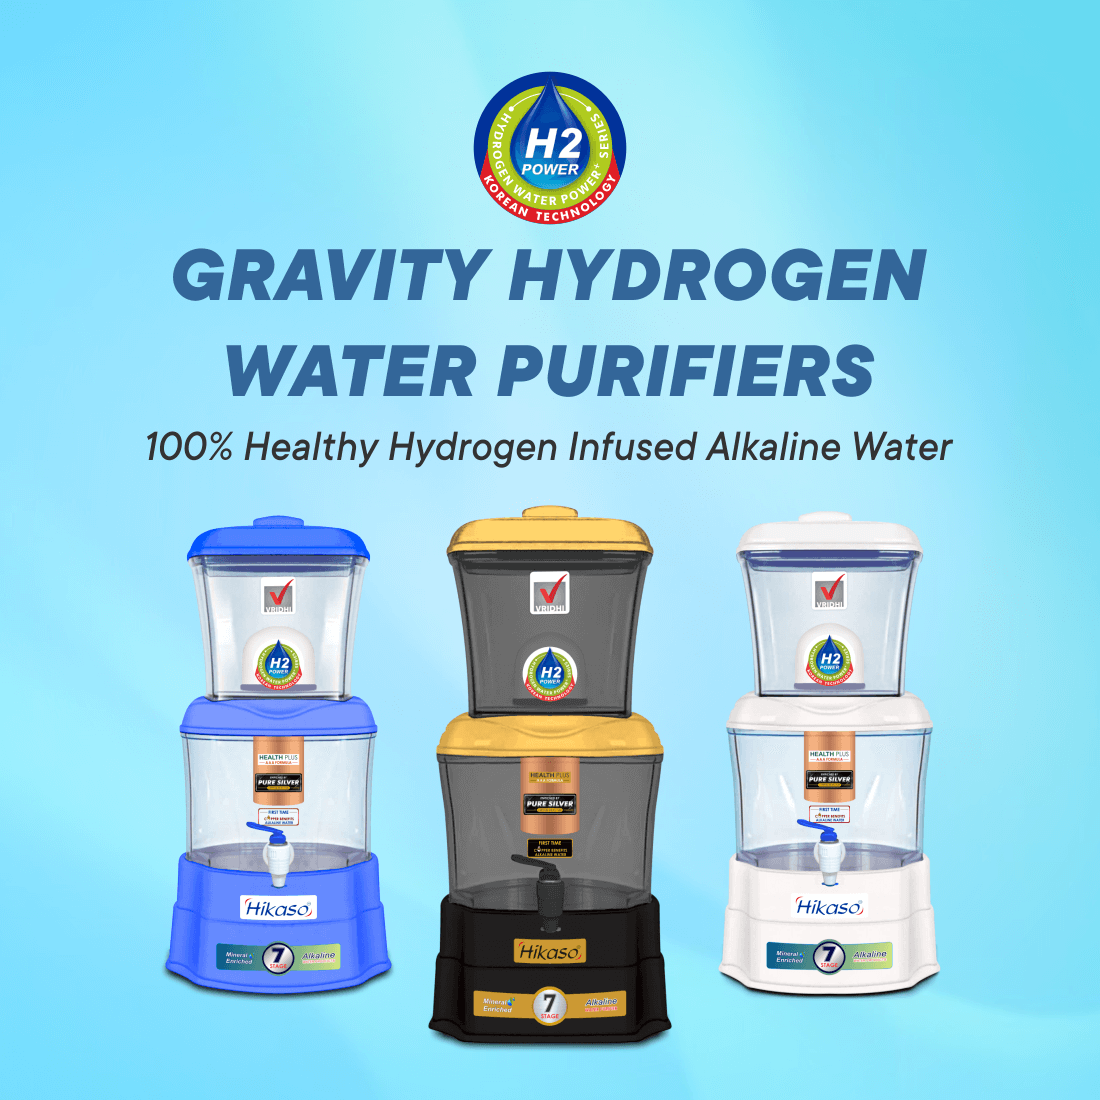 Gravity Hydrogen Water Purifiers